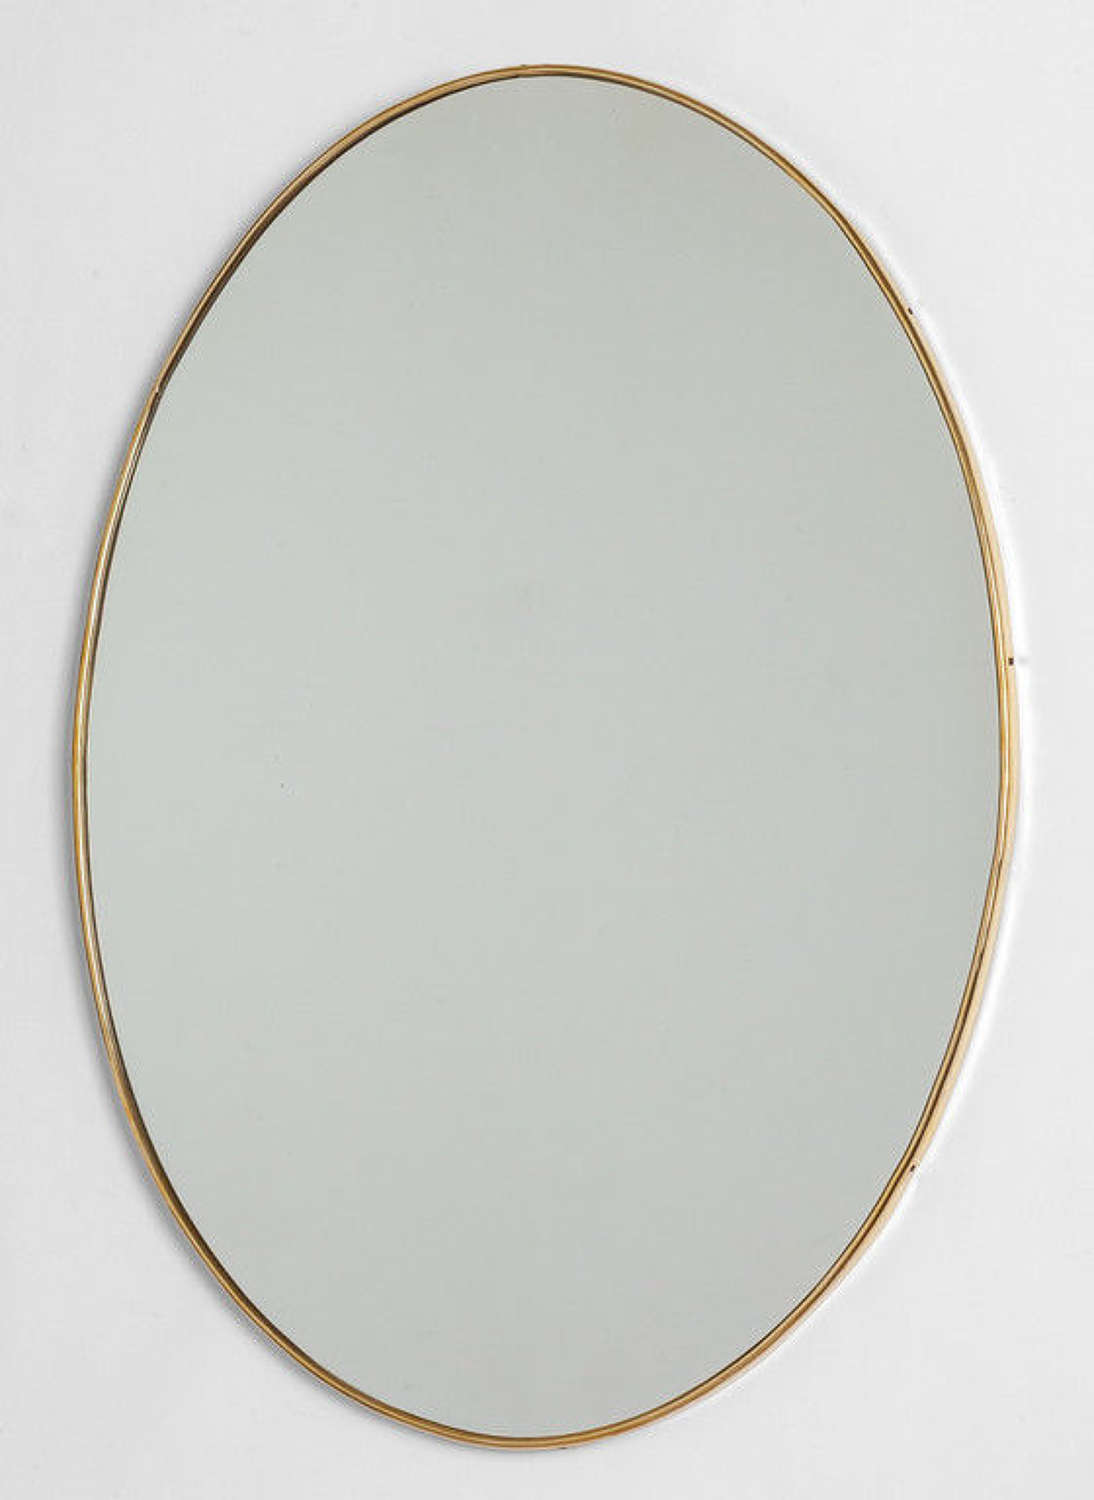 Oval Italian mirror